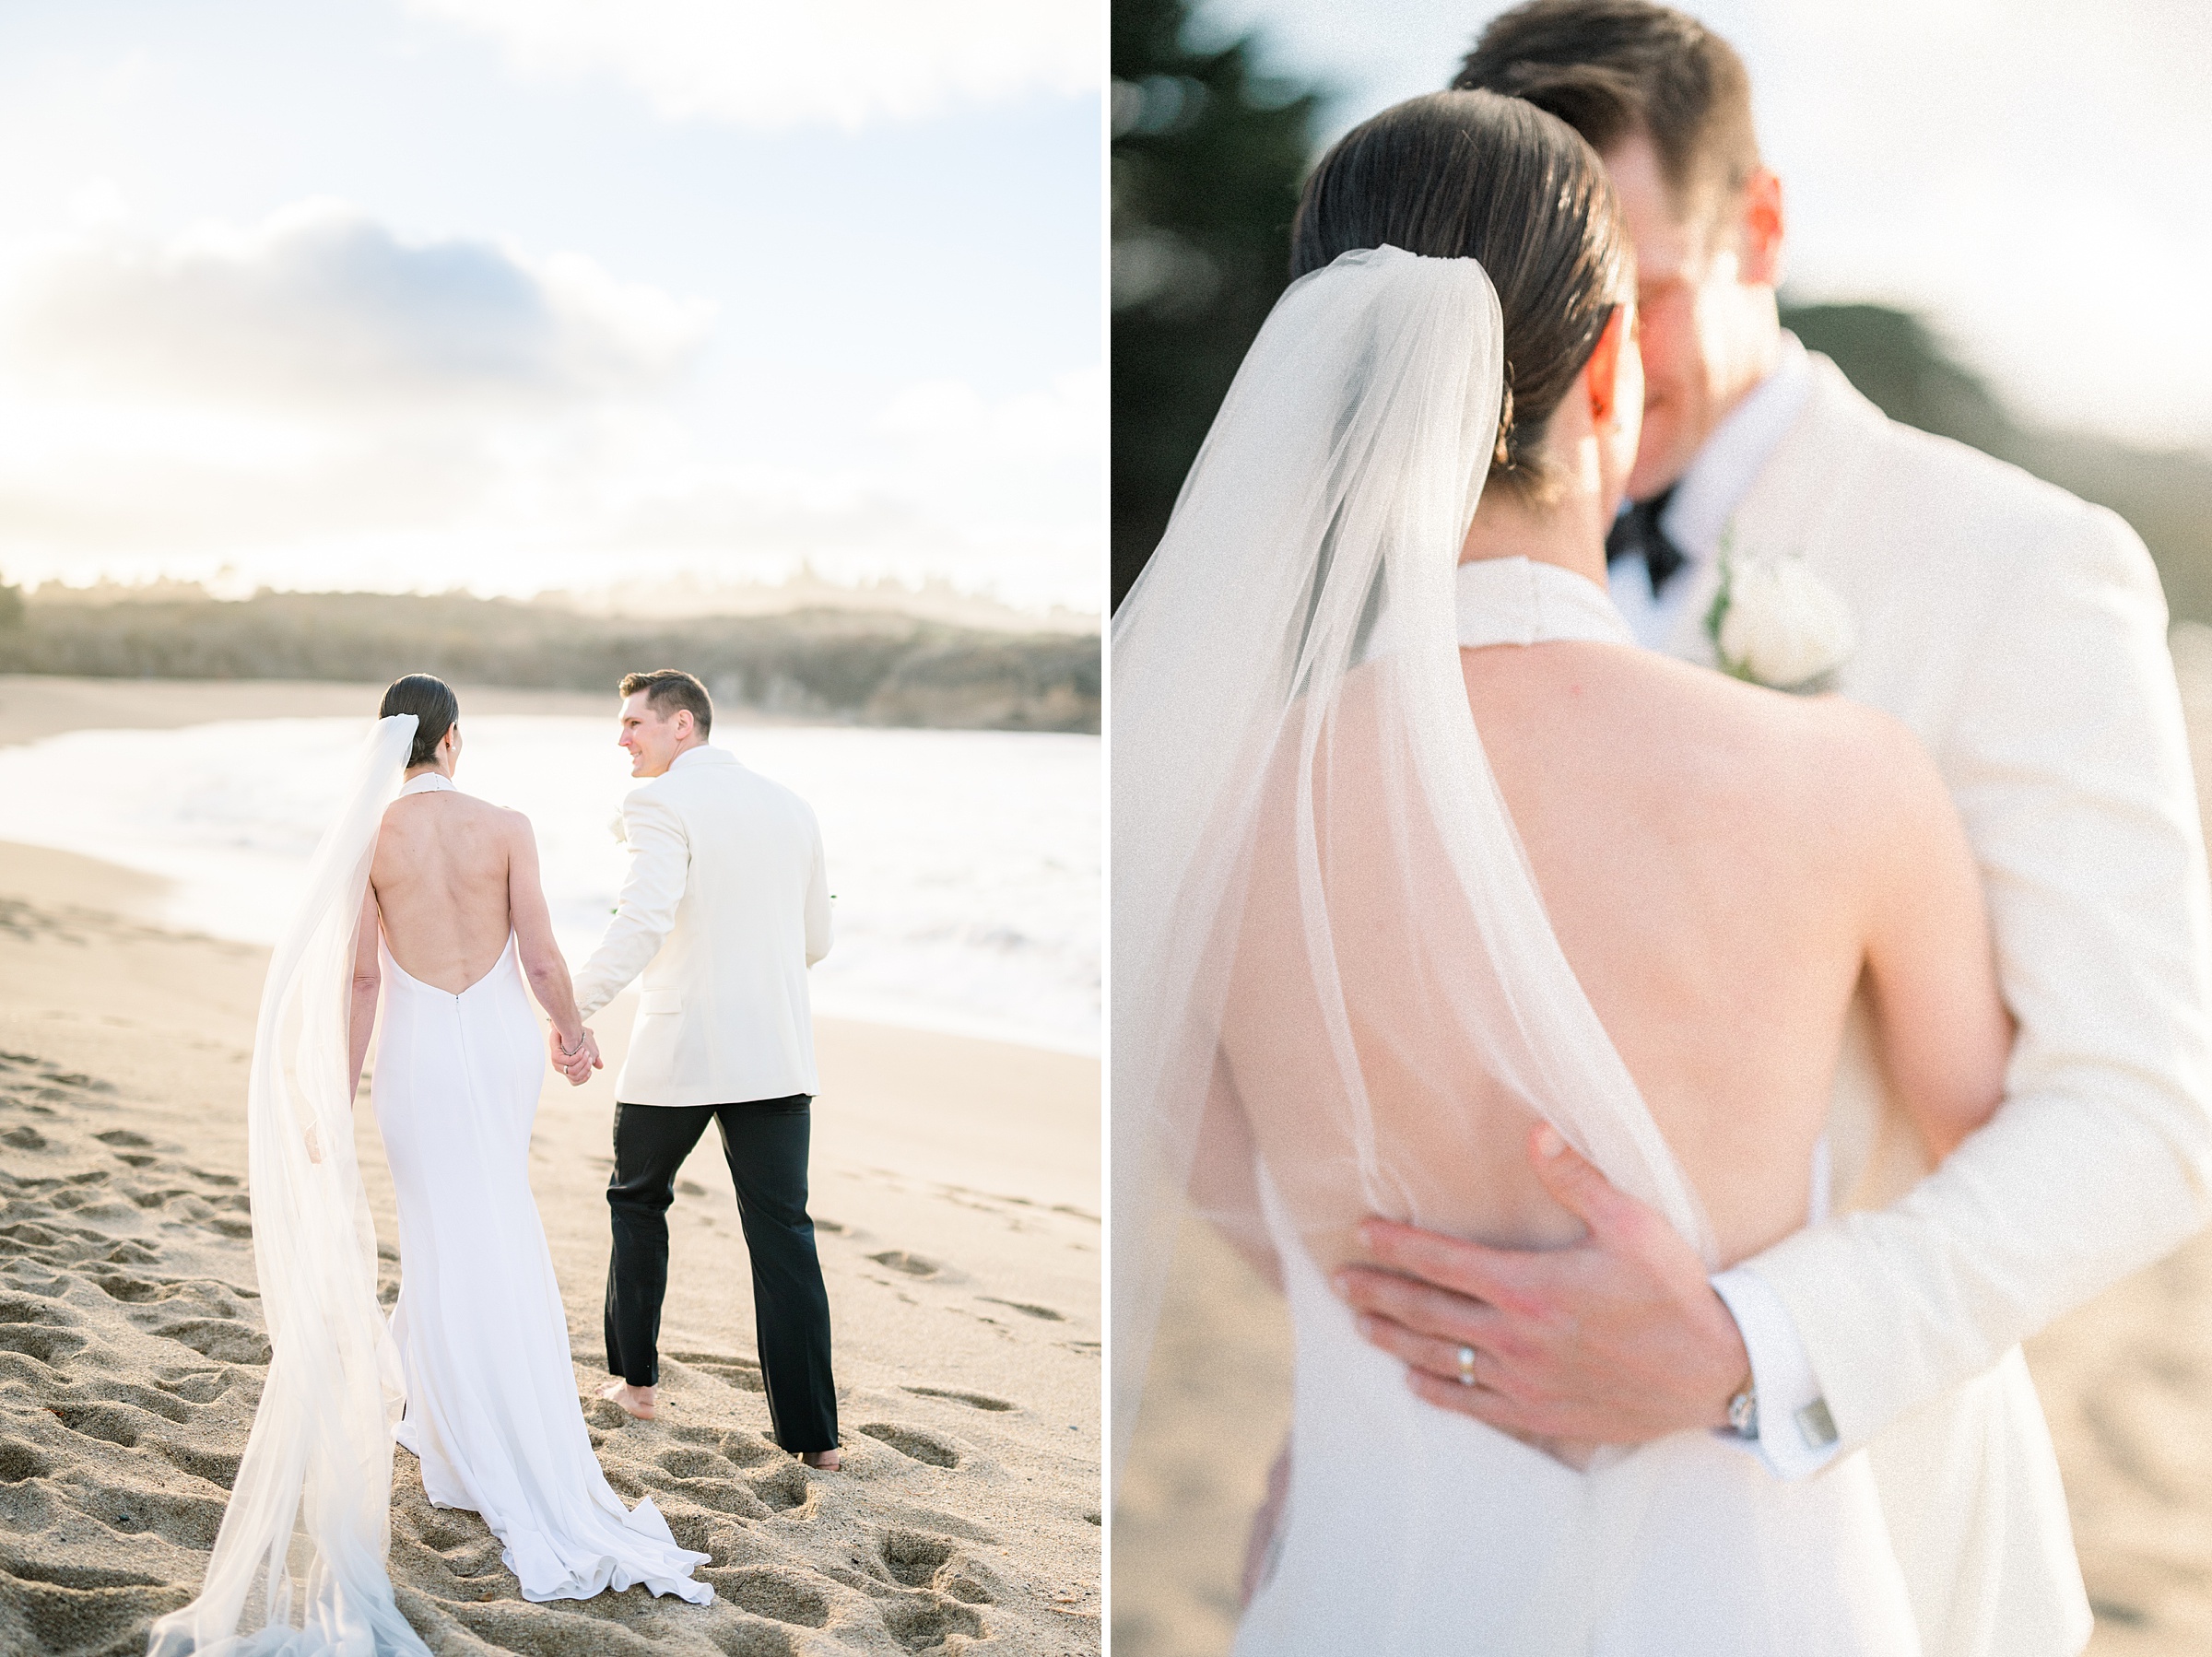 Black tie wedding at the beach in Carmel by the Sea | Carmel Fields Wedgewood wedding